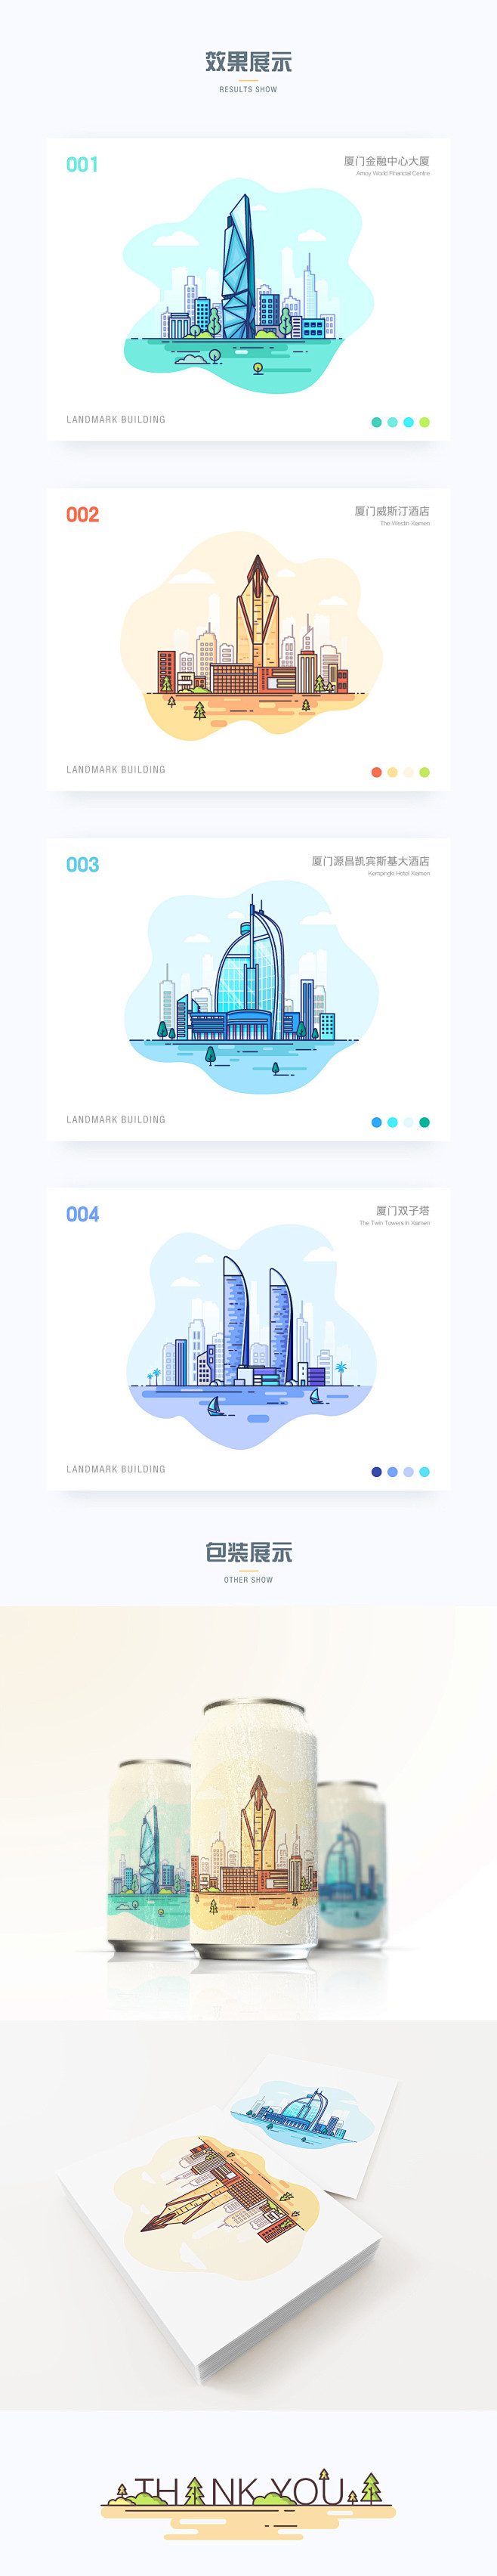 厦门·建筑插画-UI中国用户体验设计平台